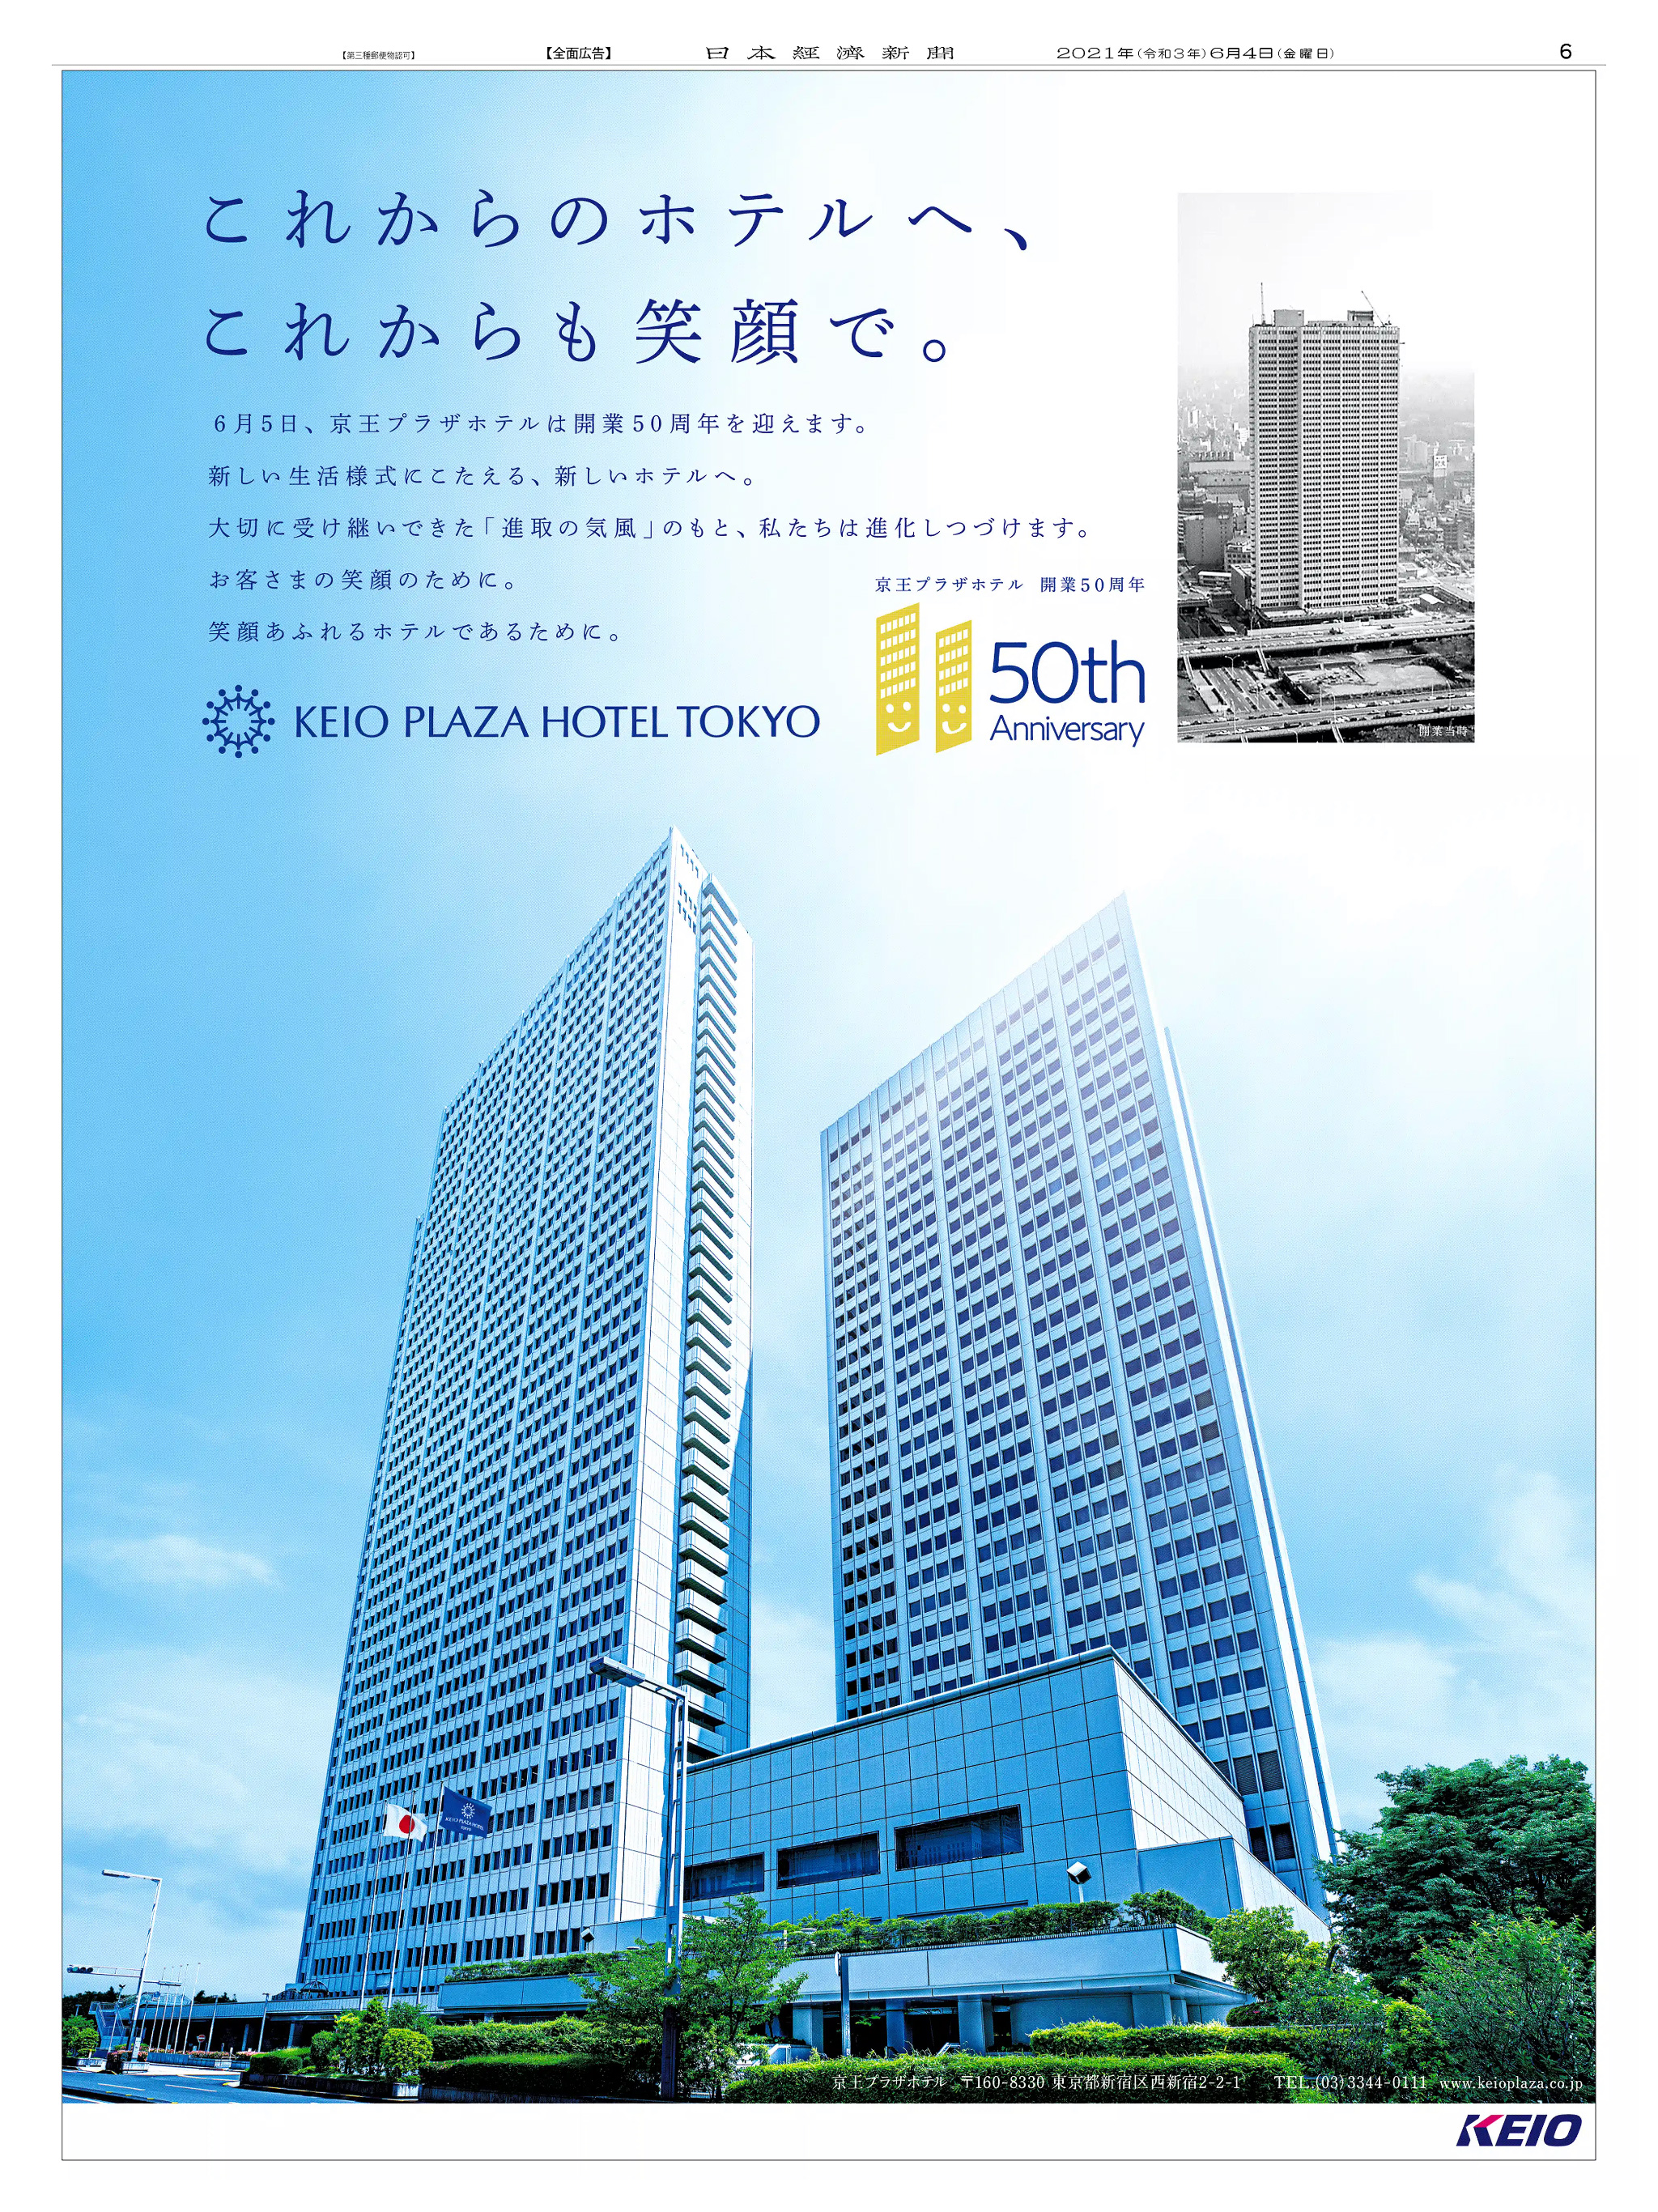 周年記念広告事例 「京王プラザホテル 開業50周年」